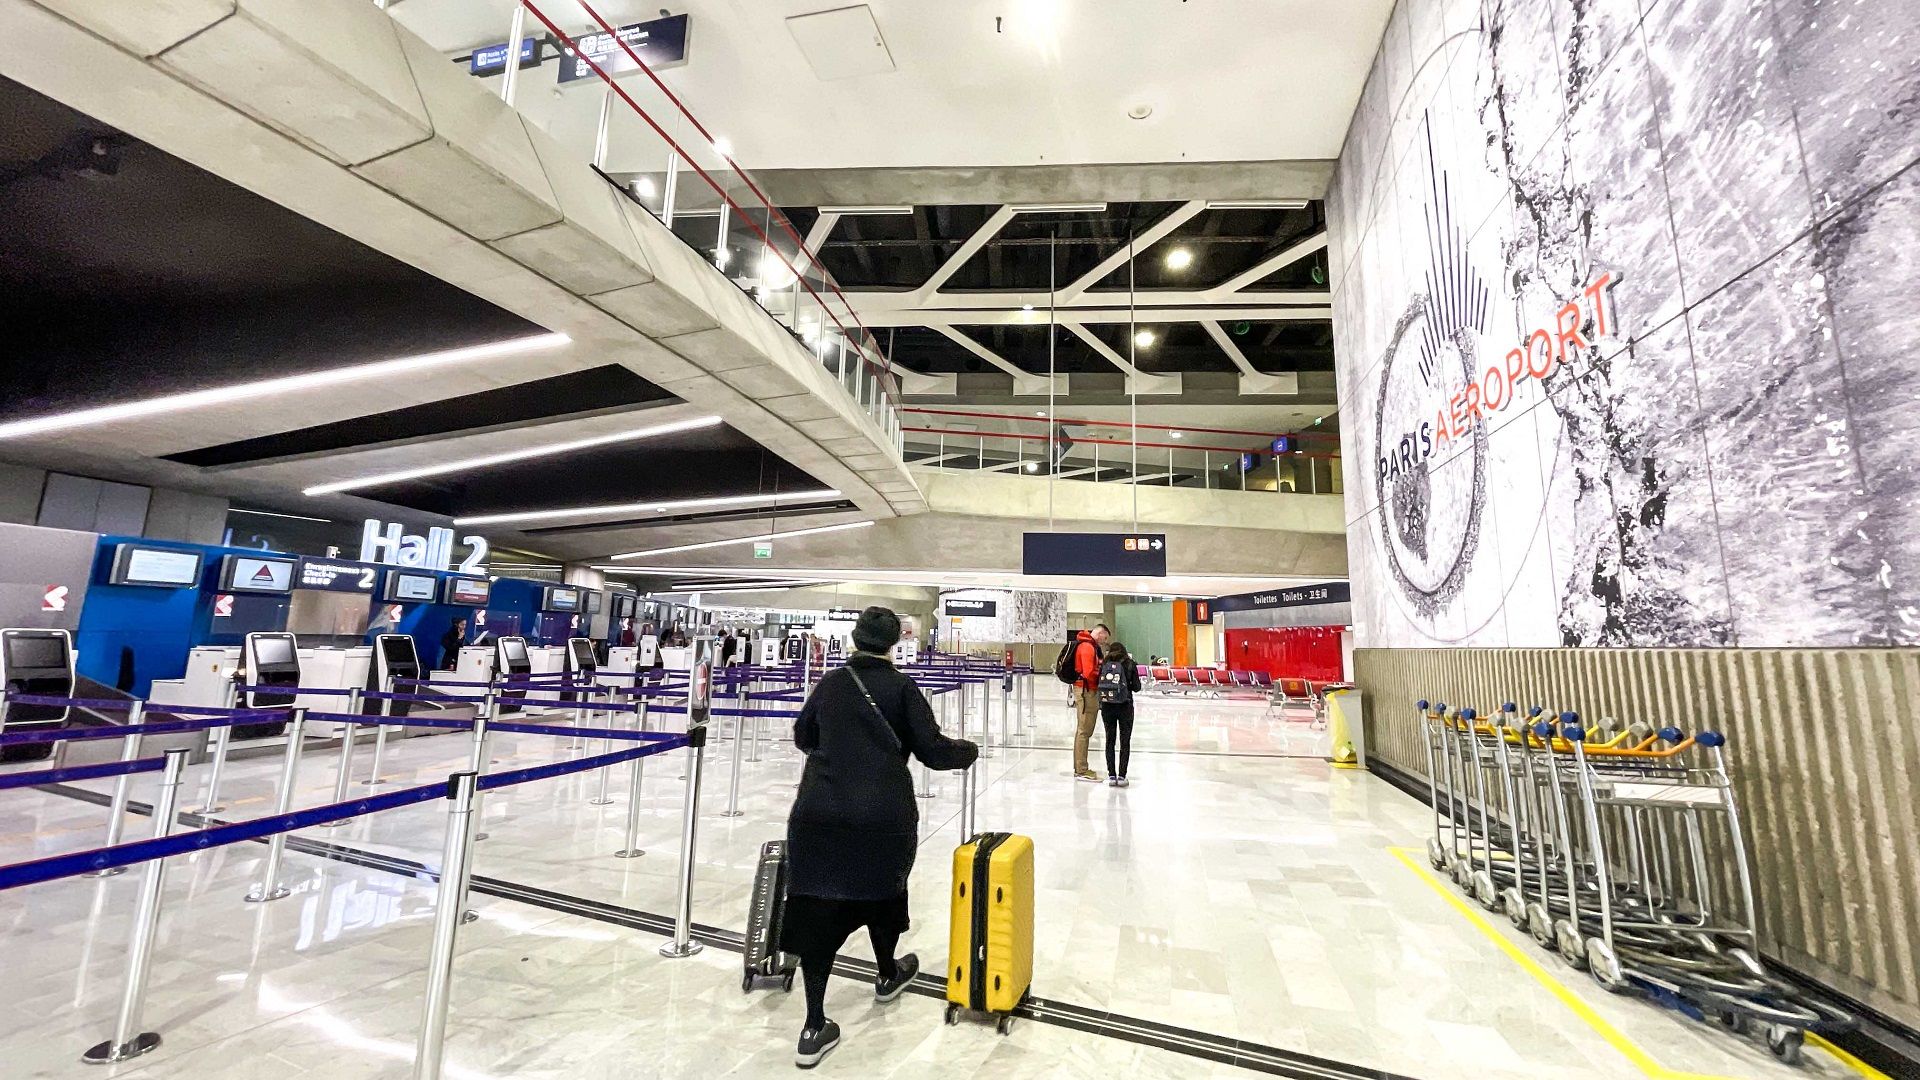 Terminal 1 Image 2 